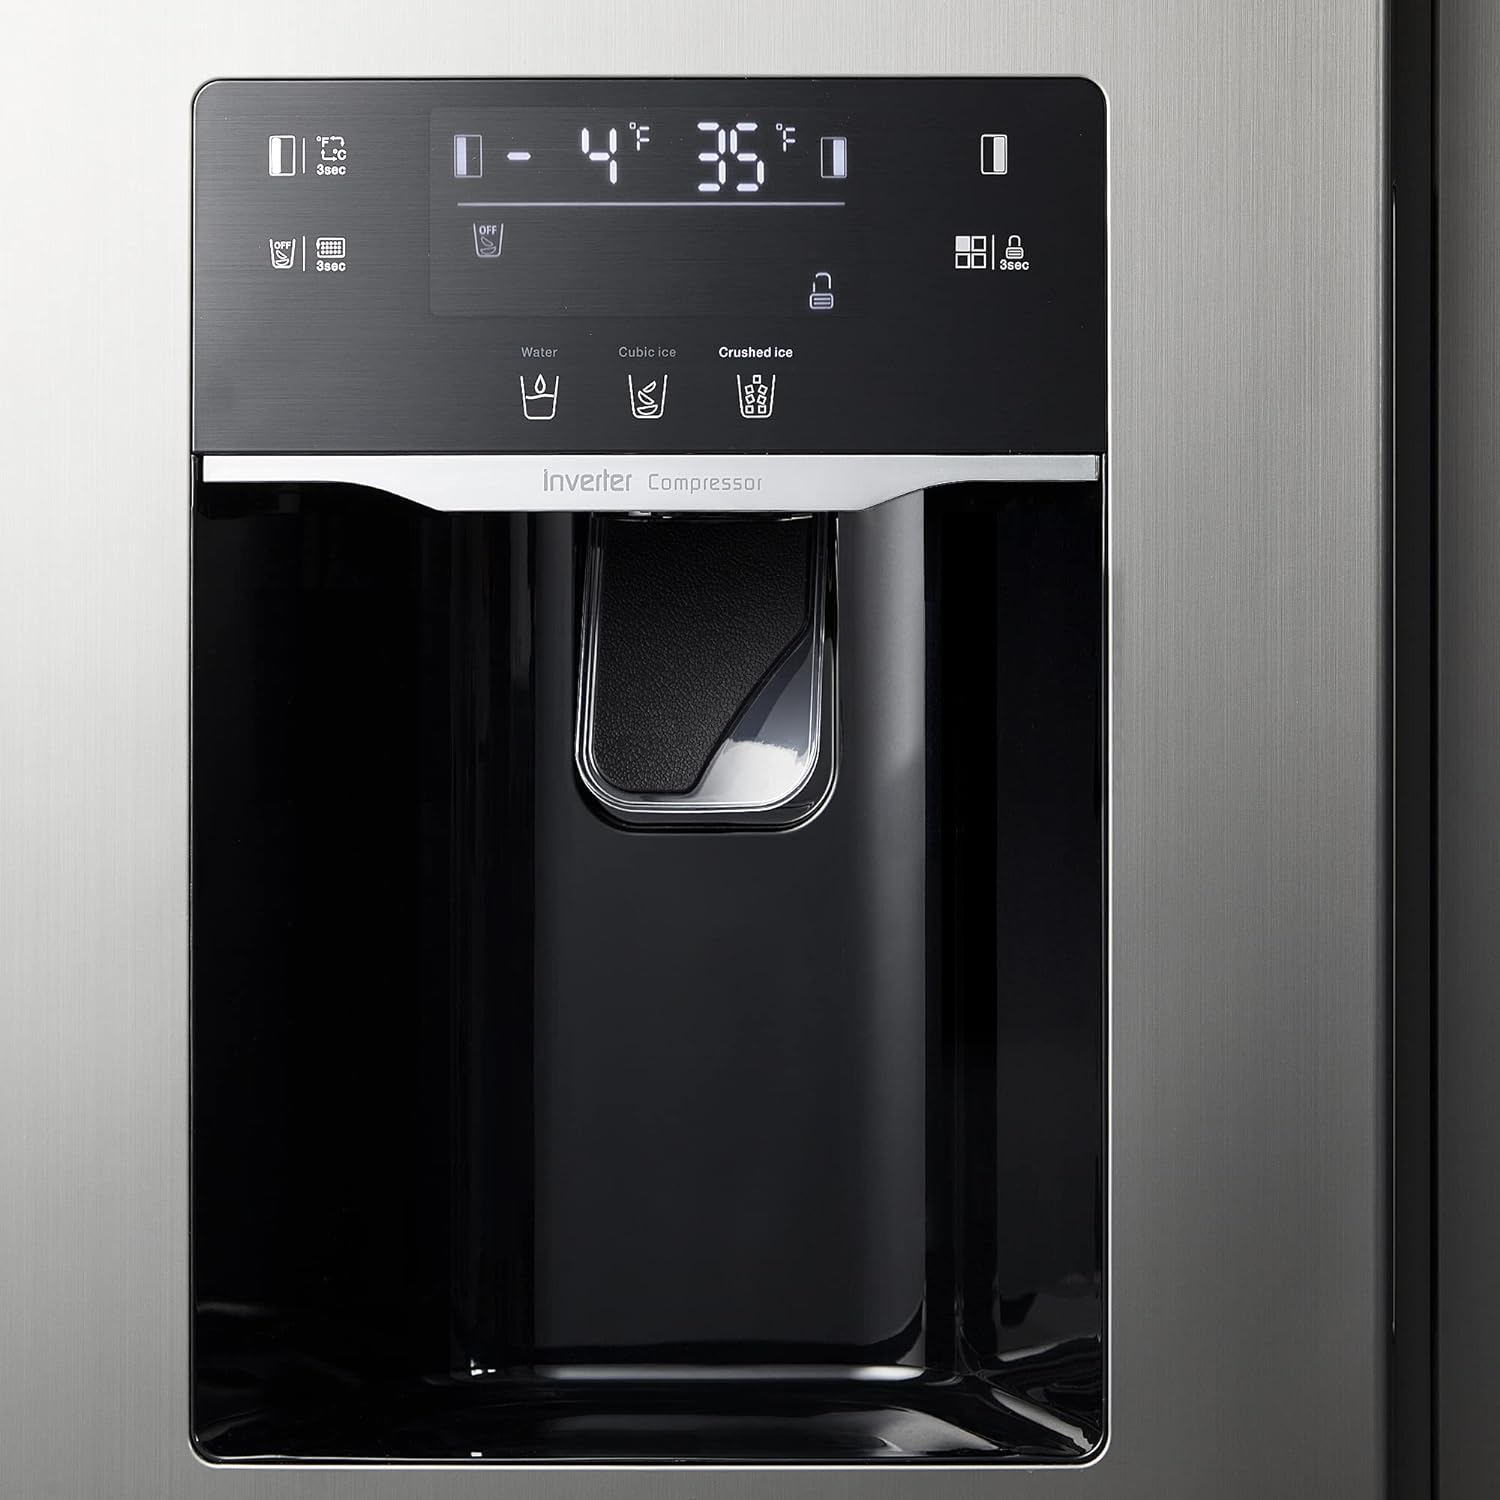 Water dispenser with double door refrigerator